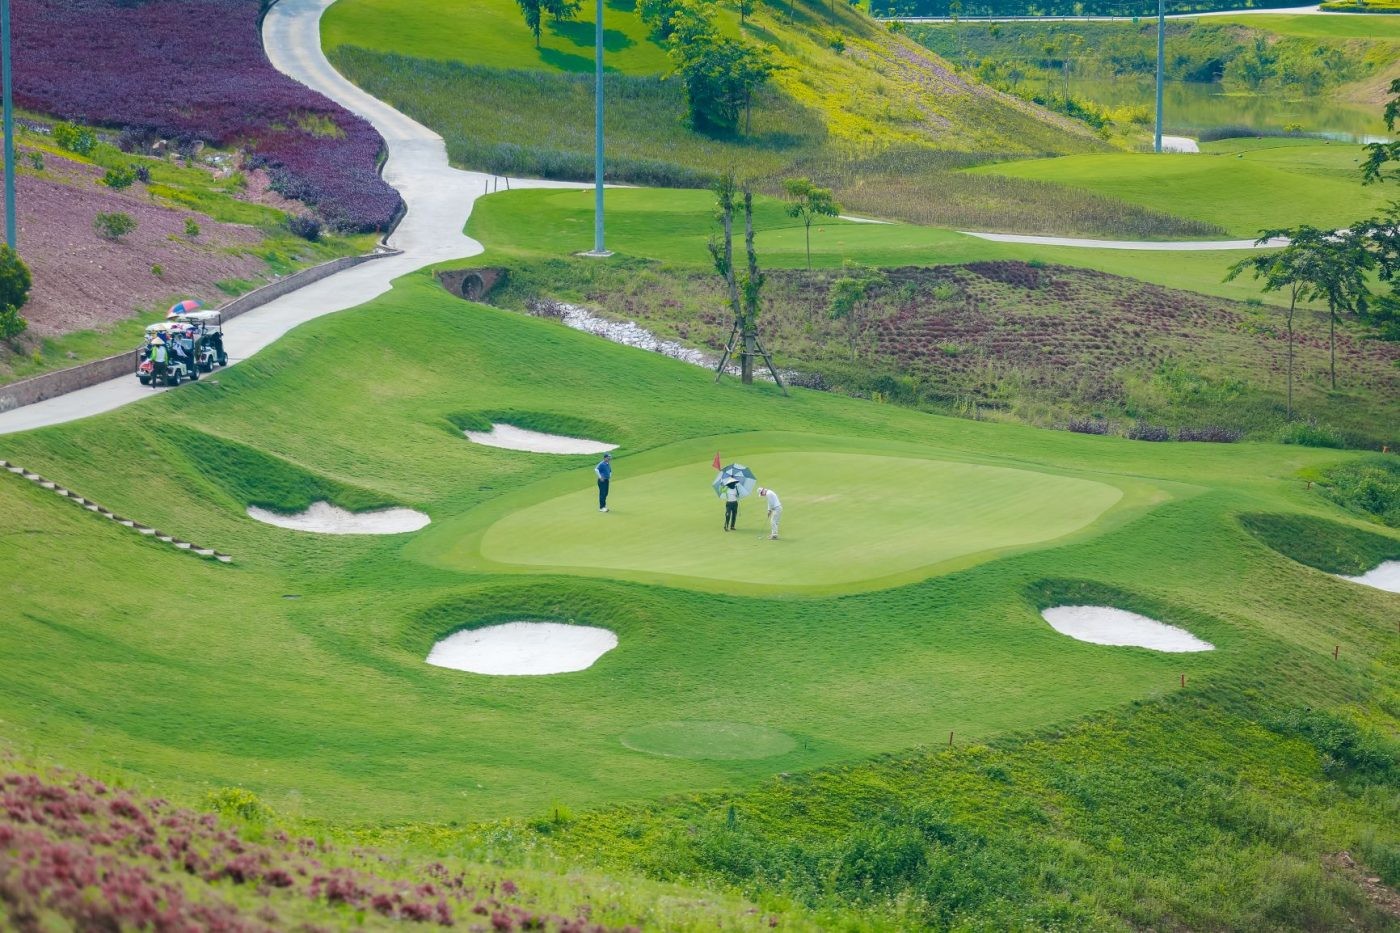 
Đến năm 2030, Bắc Giang sẽ có thêm 10 sân golf mới.&nbsp;
